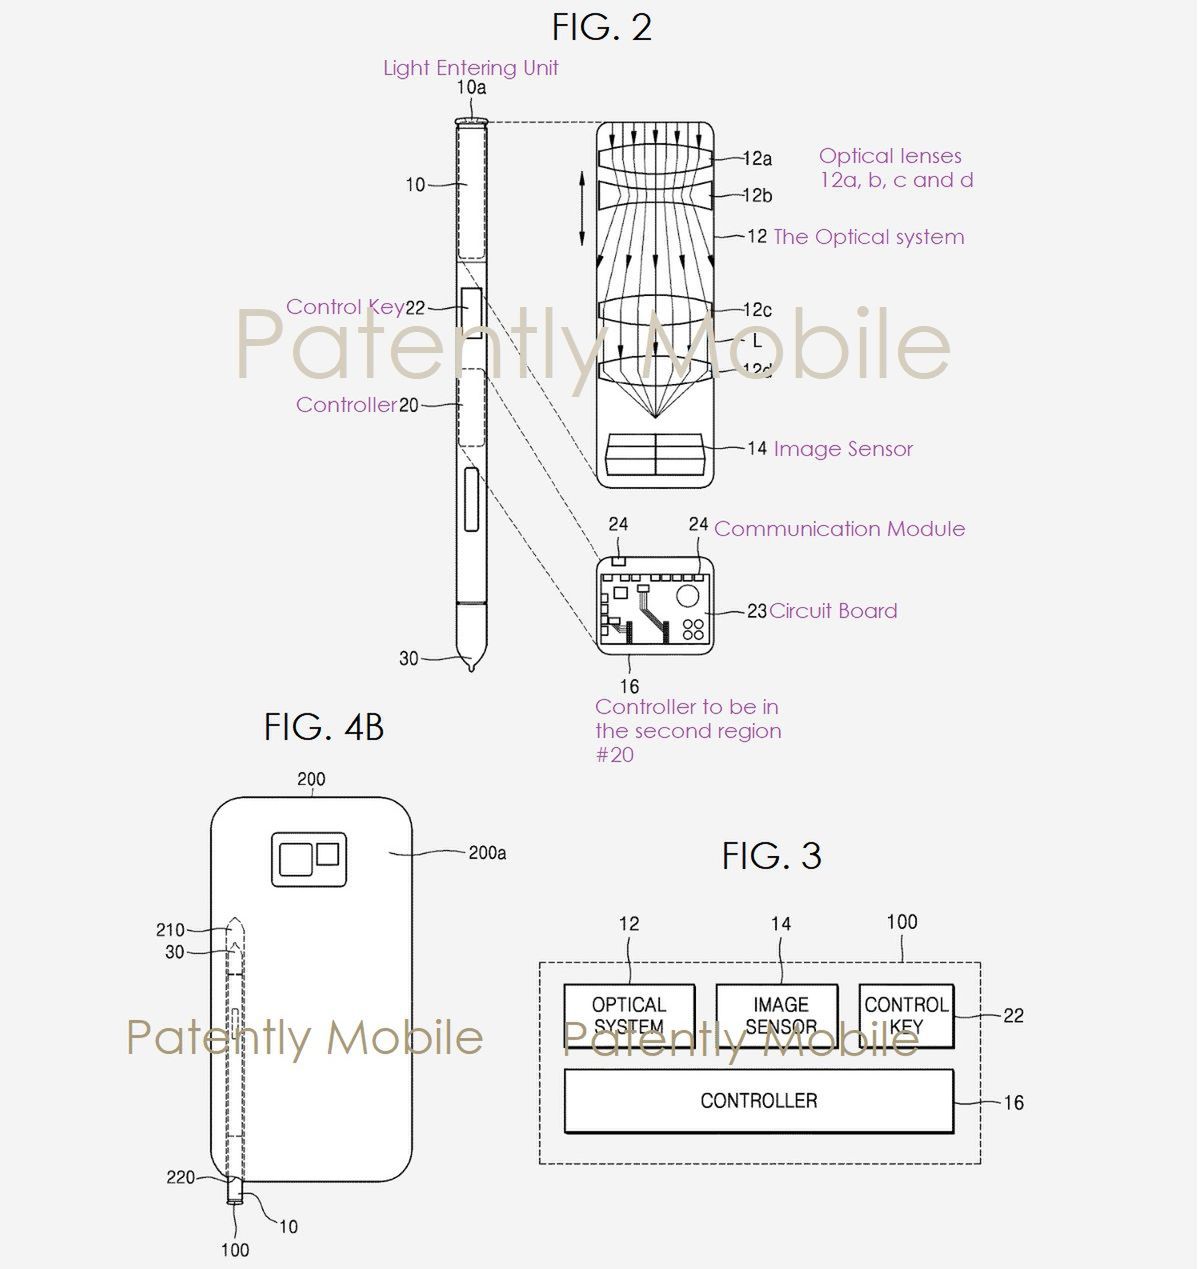 Ilustracja do wniosku patentowego Samsunga, który dotyczy rysika S Pen z wbudowanym aparatem